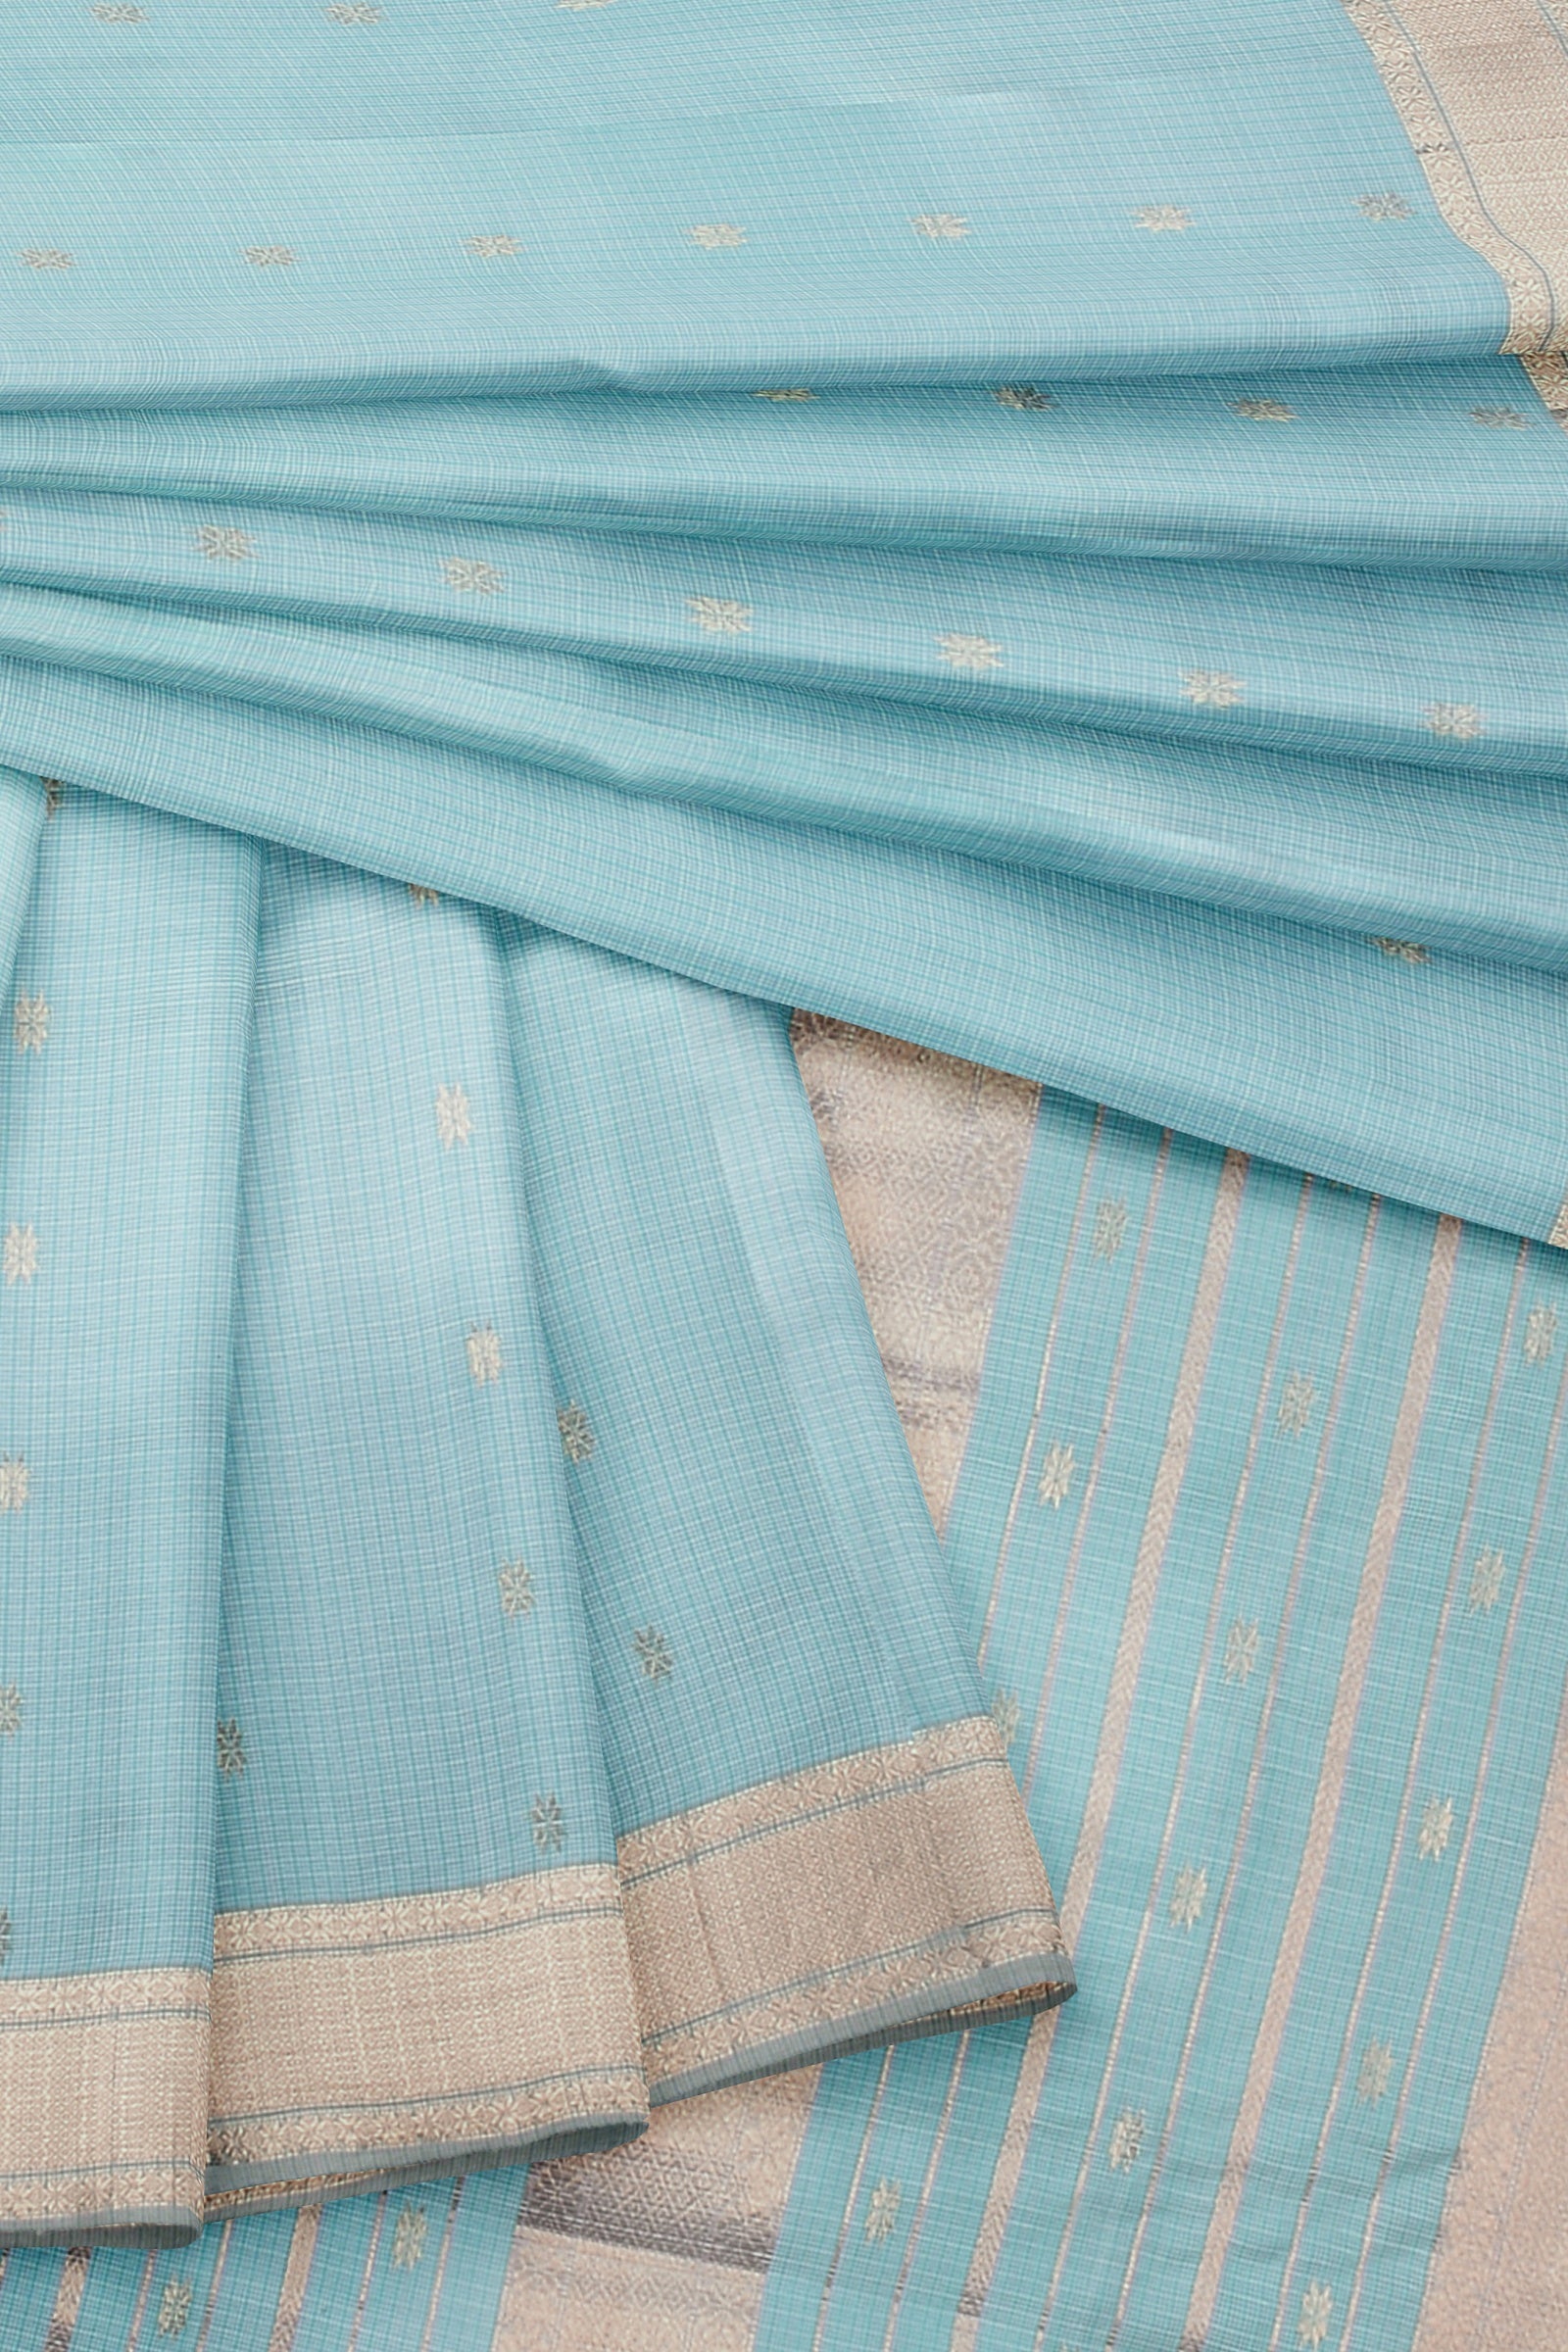 Hand Woven Turquoise Blue Color Traditional Buti Checks Sausar Silk with Zari Border Saree SKU-BS10051 - Bhartiya Shilp